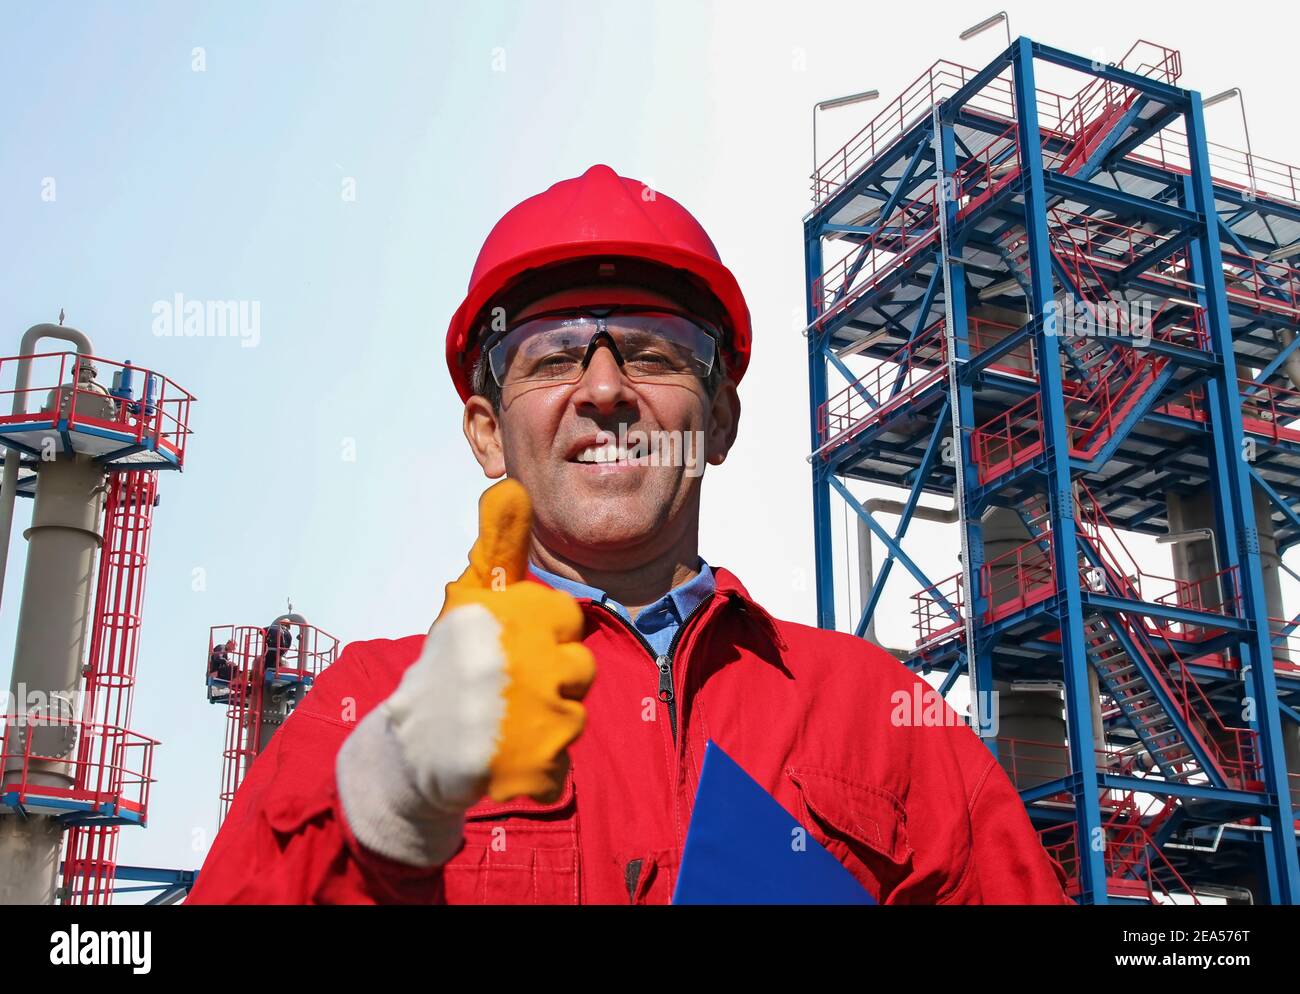 Happy Oil Worker in Red HardHat gibt Daumen nach oben vor Öl und Gas Raffinerie. Porträt eines lächelnden Mannes in schützender Arbeitskleidung. Stockfoto